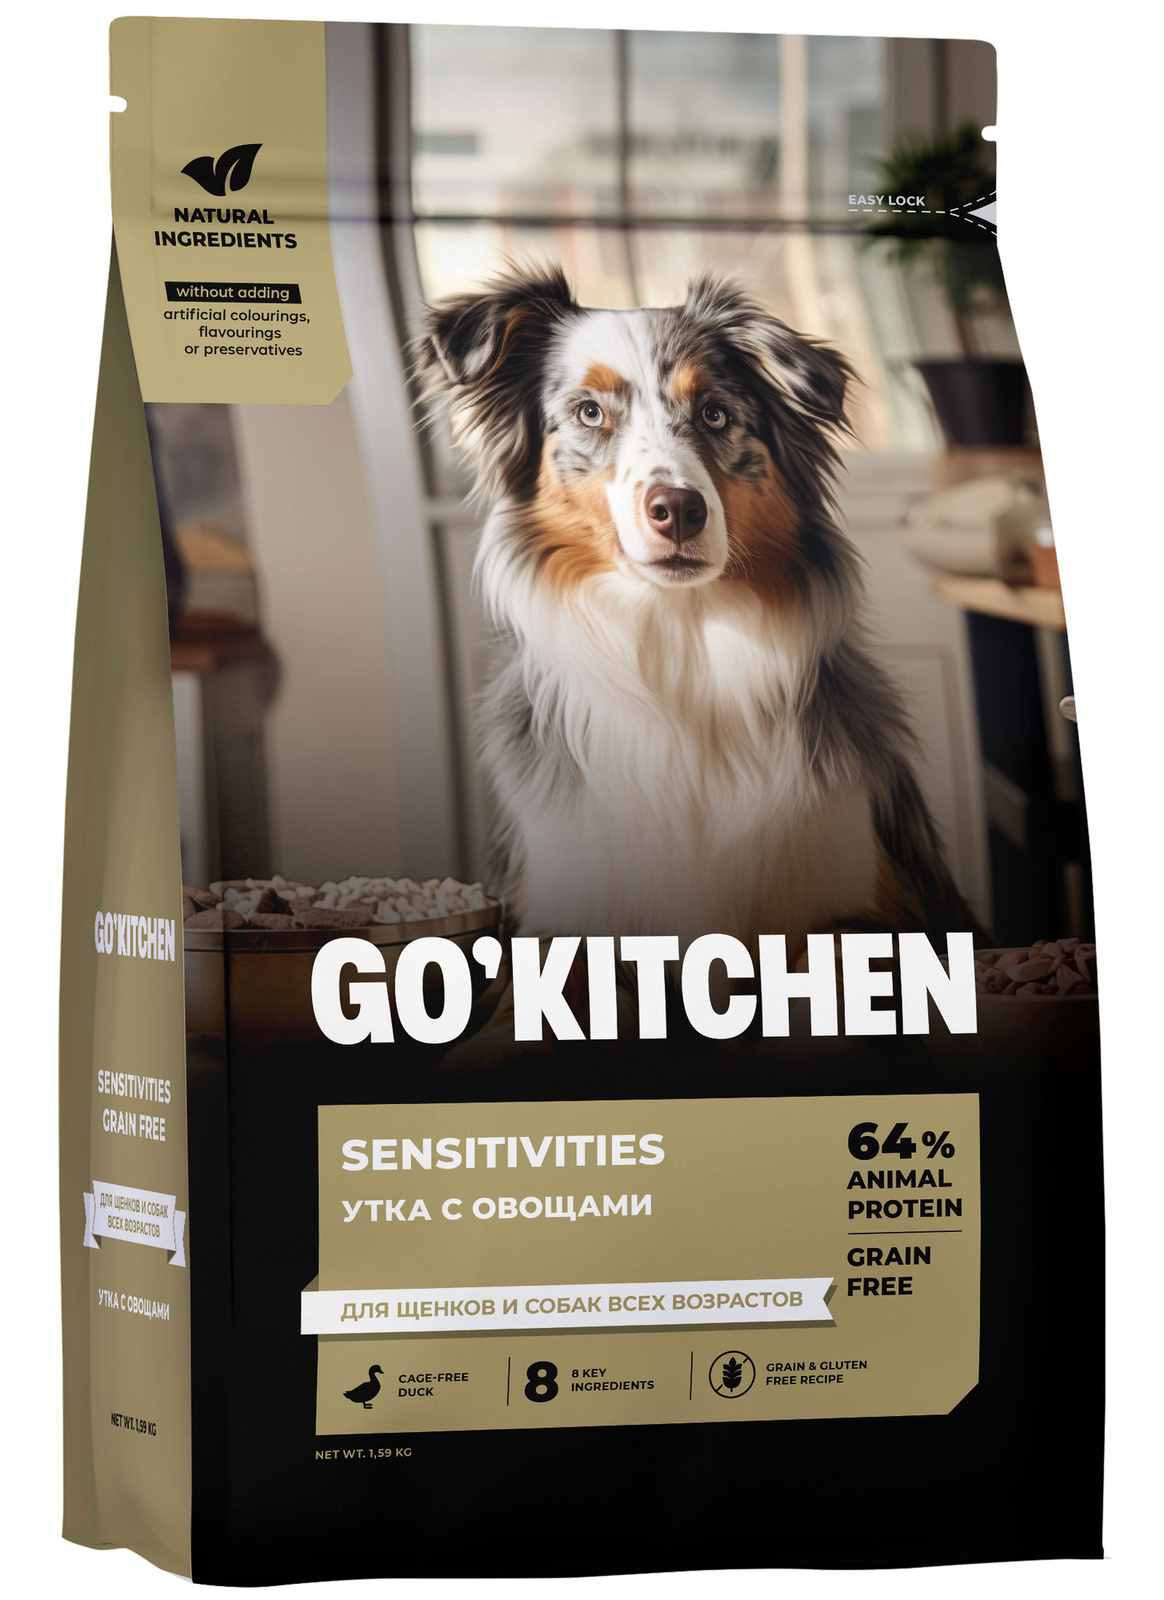 GO'KITCHEN GO'KITCHEN утка с овощами, полнорационный беззерновой сухой корм для щенков и собак всех возрастов с уткой для чувствительного пищеварения (9,98 кг)